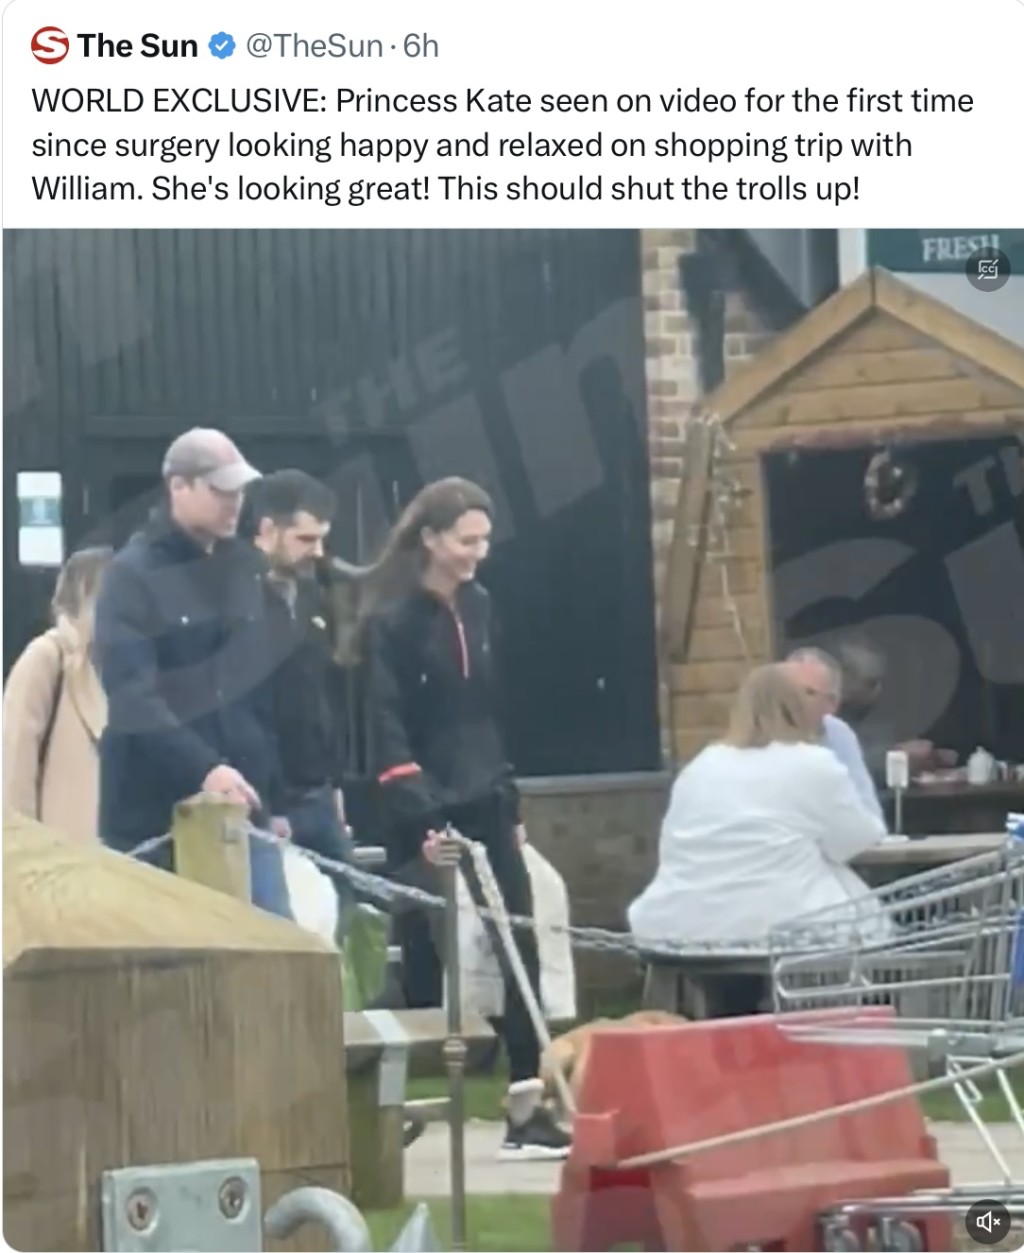 太阳报公开凯特“术后首次露面”逛农场商店的影片，引发热议。 